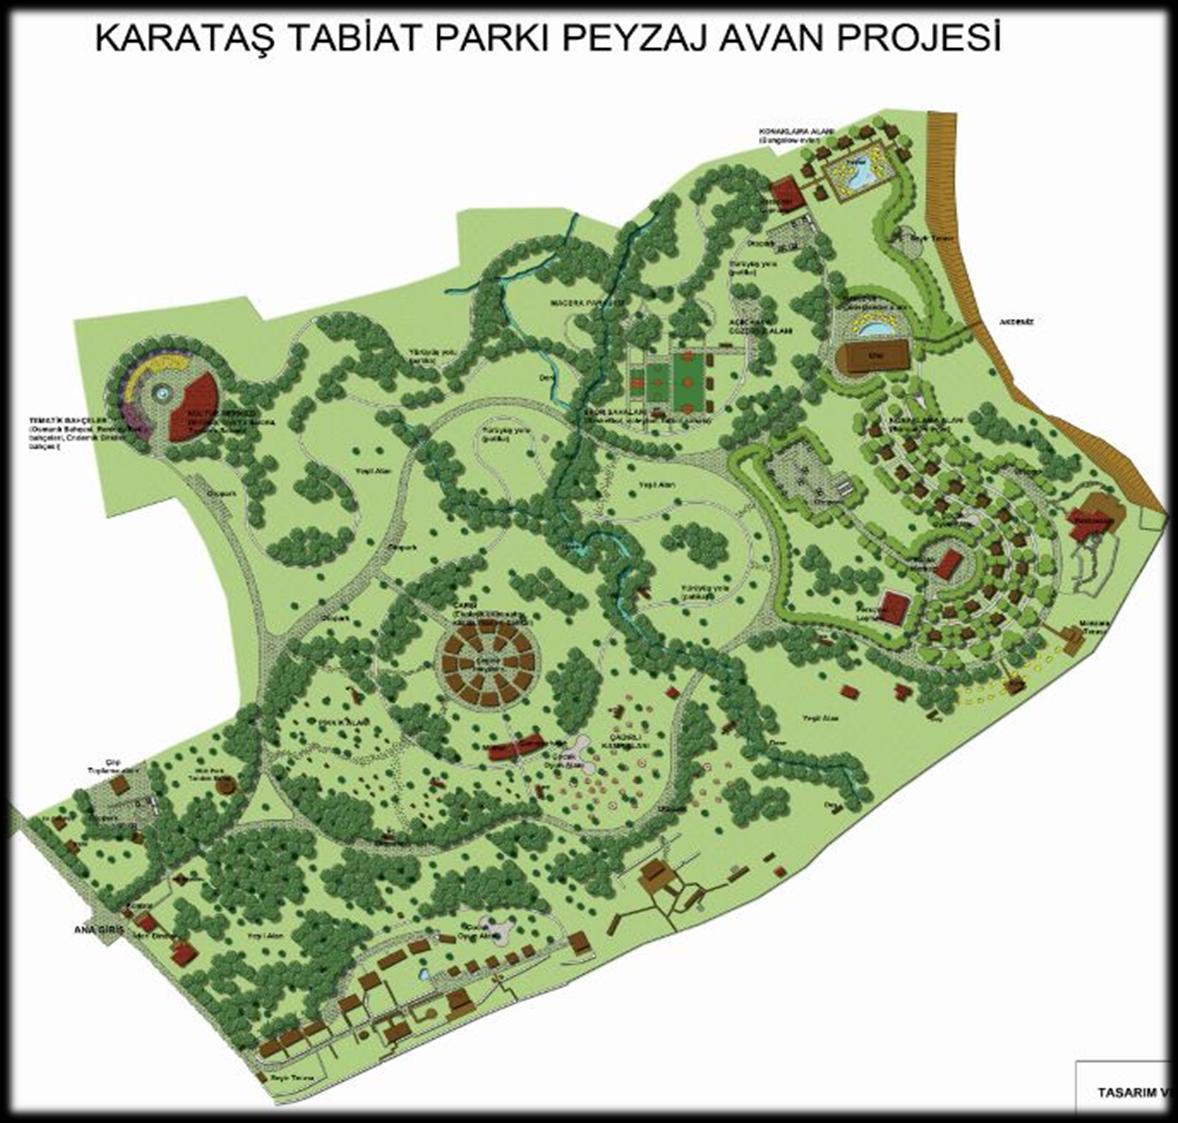 1 Mevcut Alanlarımızın Yeniden Yapılandırılması 1.1. Kumluk Tabiat Parkı ( Günübirlik ): Karataş Adana iline 45 km mesafede bulunan Karataş ilçesindeki Kumluk Tabiat